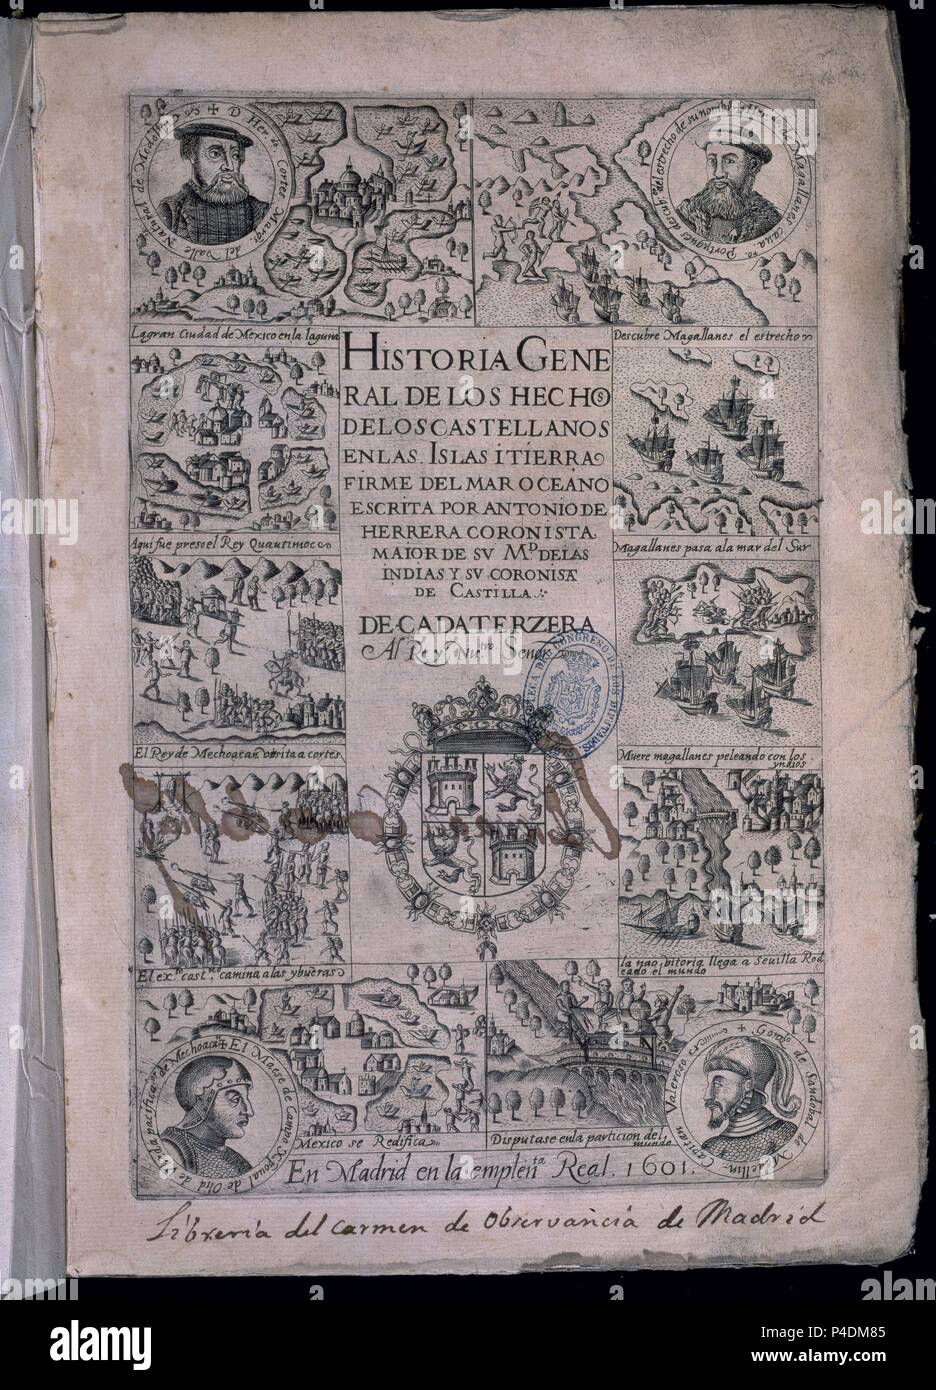 HISTORIA GENERAL DE LOS HECHOS CASTELLANOS EN LAS ISLAS Y TIERRA FIRME DE LAS INDIAS - MADRID - 1601. Autor: Antonio Herrera y Tordesillas (1549-1625). Ubicación: CONGRESO DE LOS DIPUTADOS-biblioteca, Madrid, España. Foto de stock